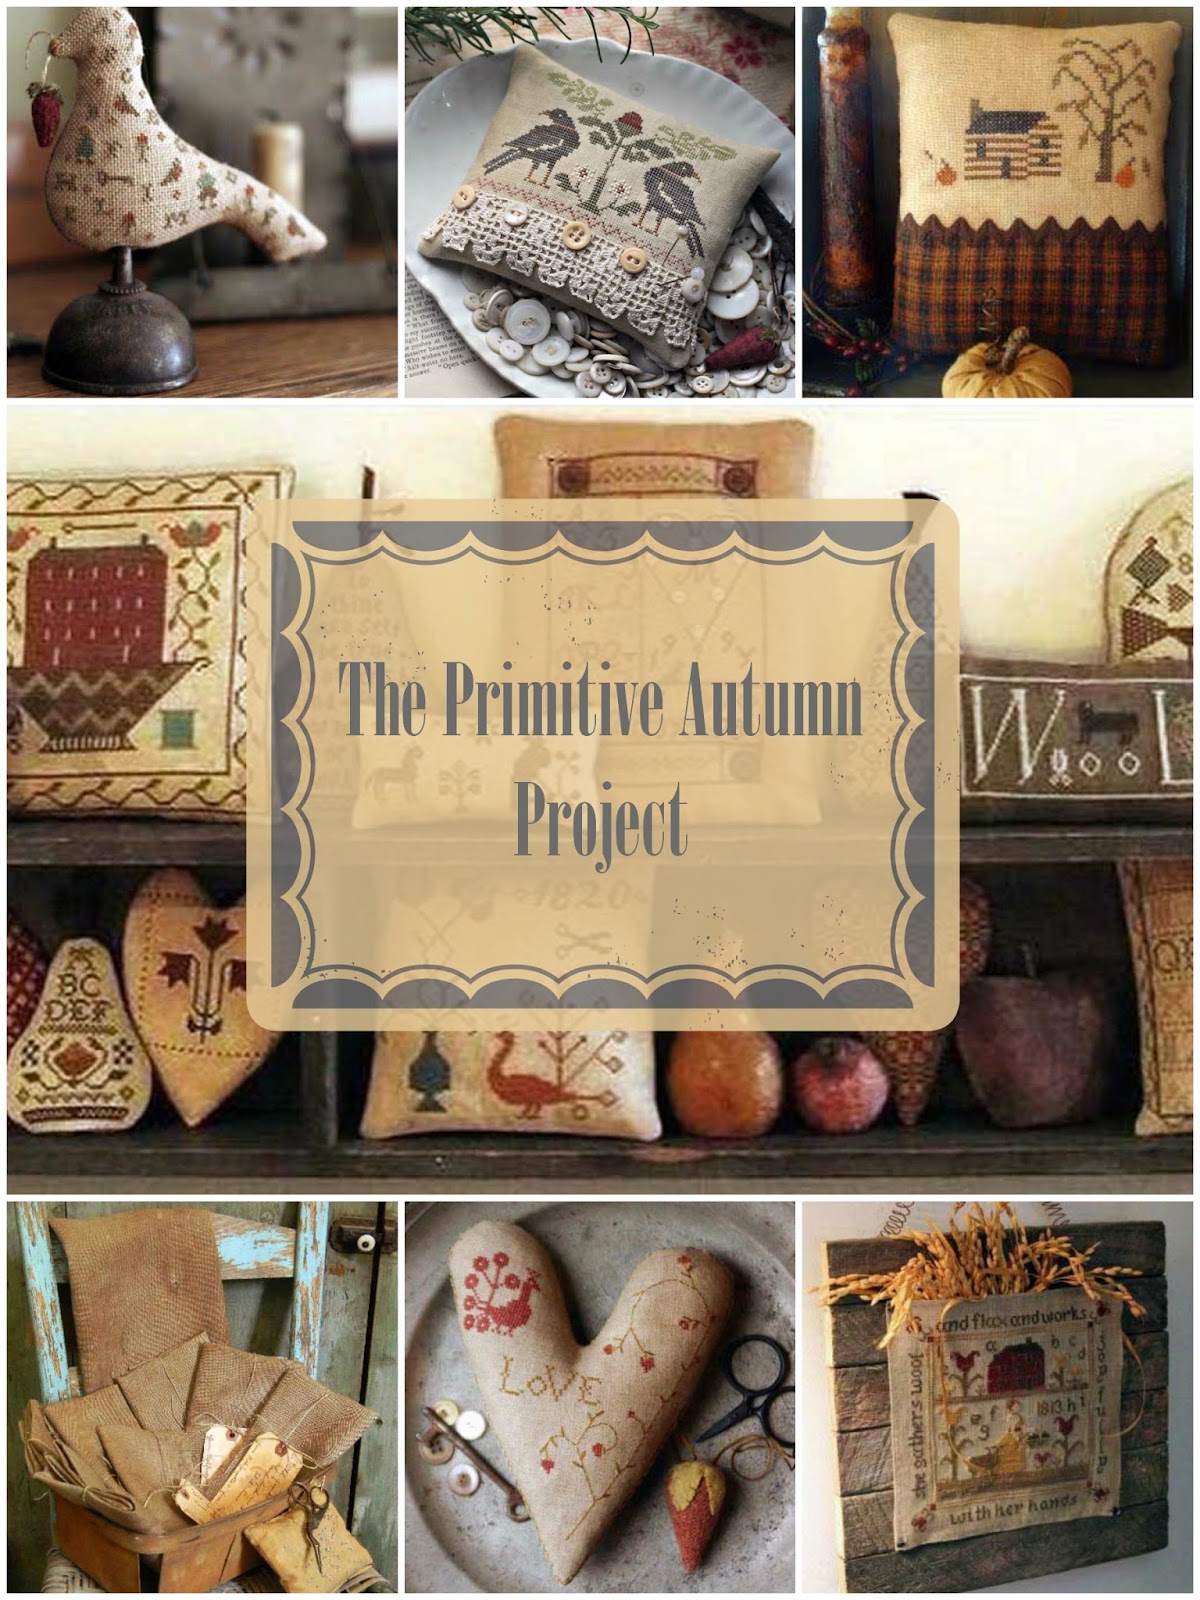 осенний проект "The Primitive Autumn" в блоге у Juliet Morgendorffer